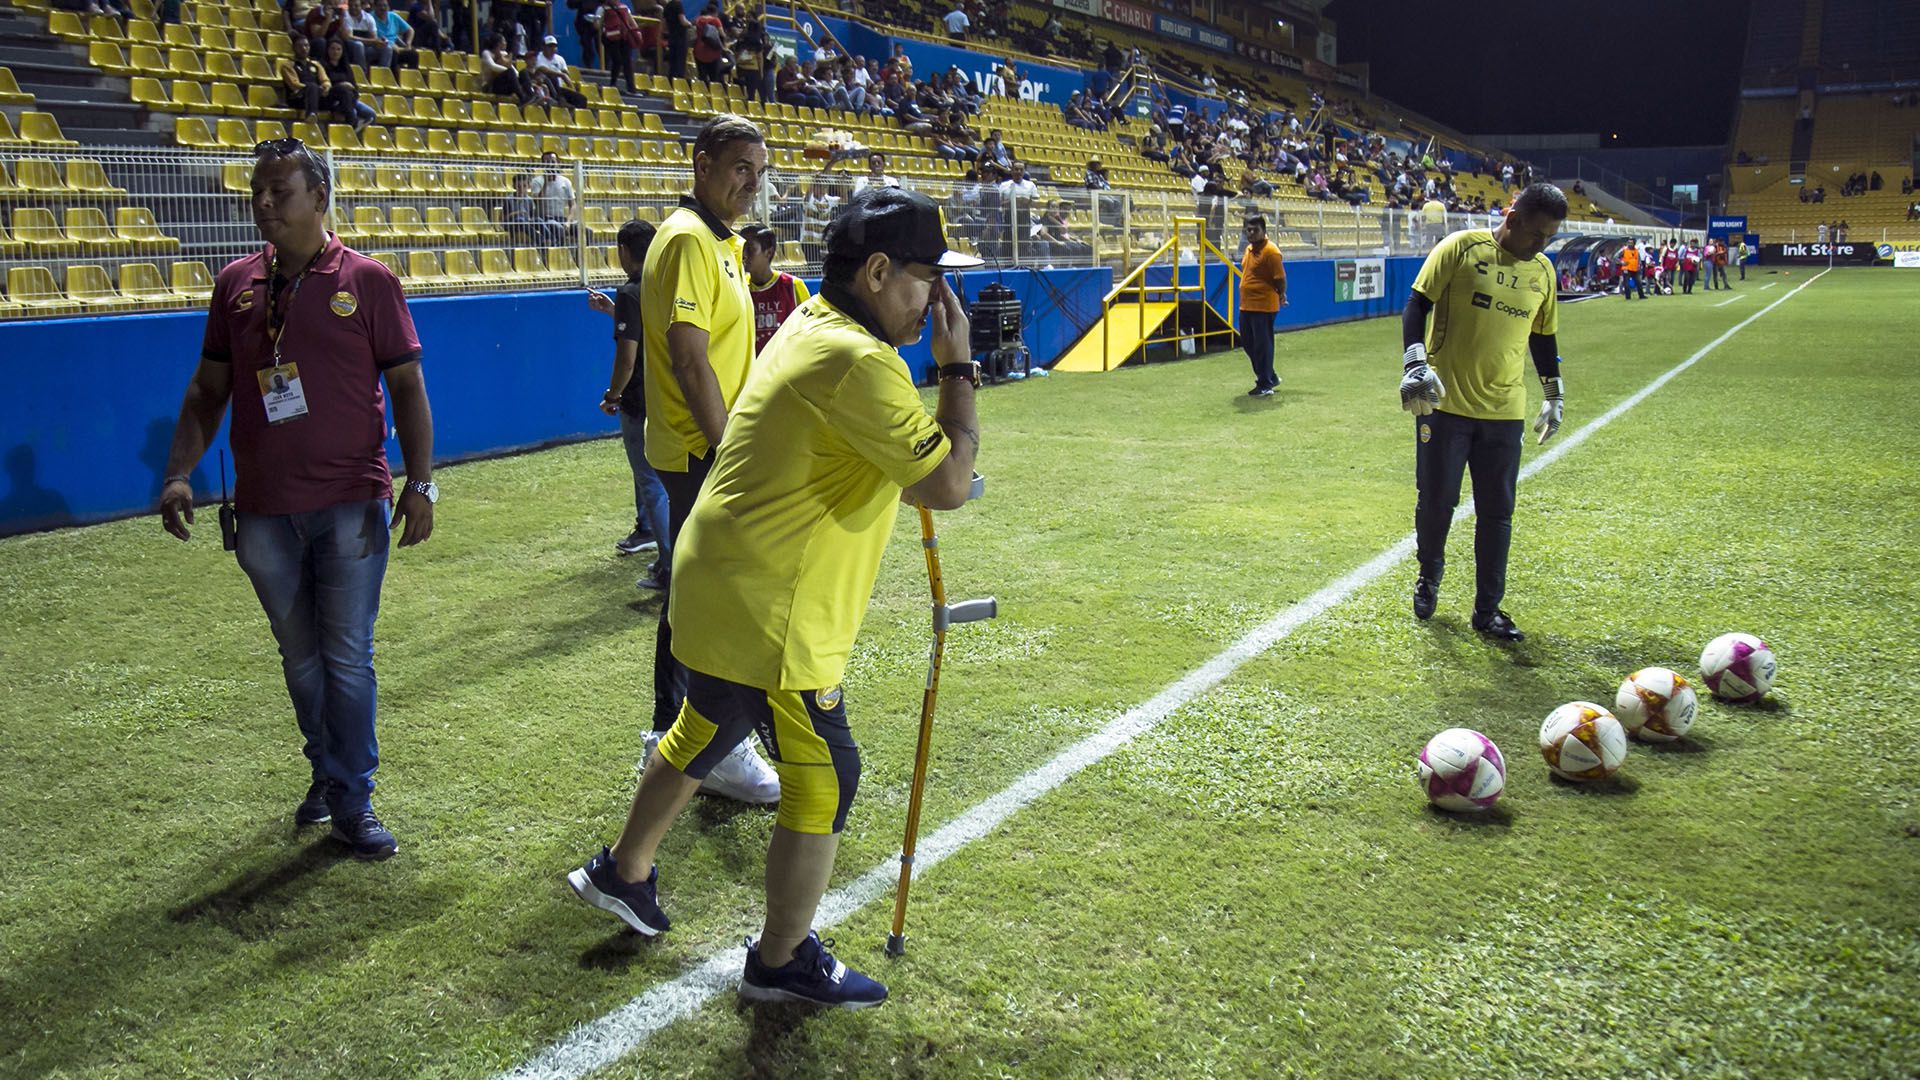 Una de las imágenes más emocionantes que muestra el documental es cuando Maradona vuelve a patear una pelota (AFP)